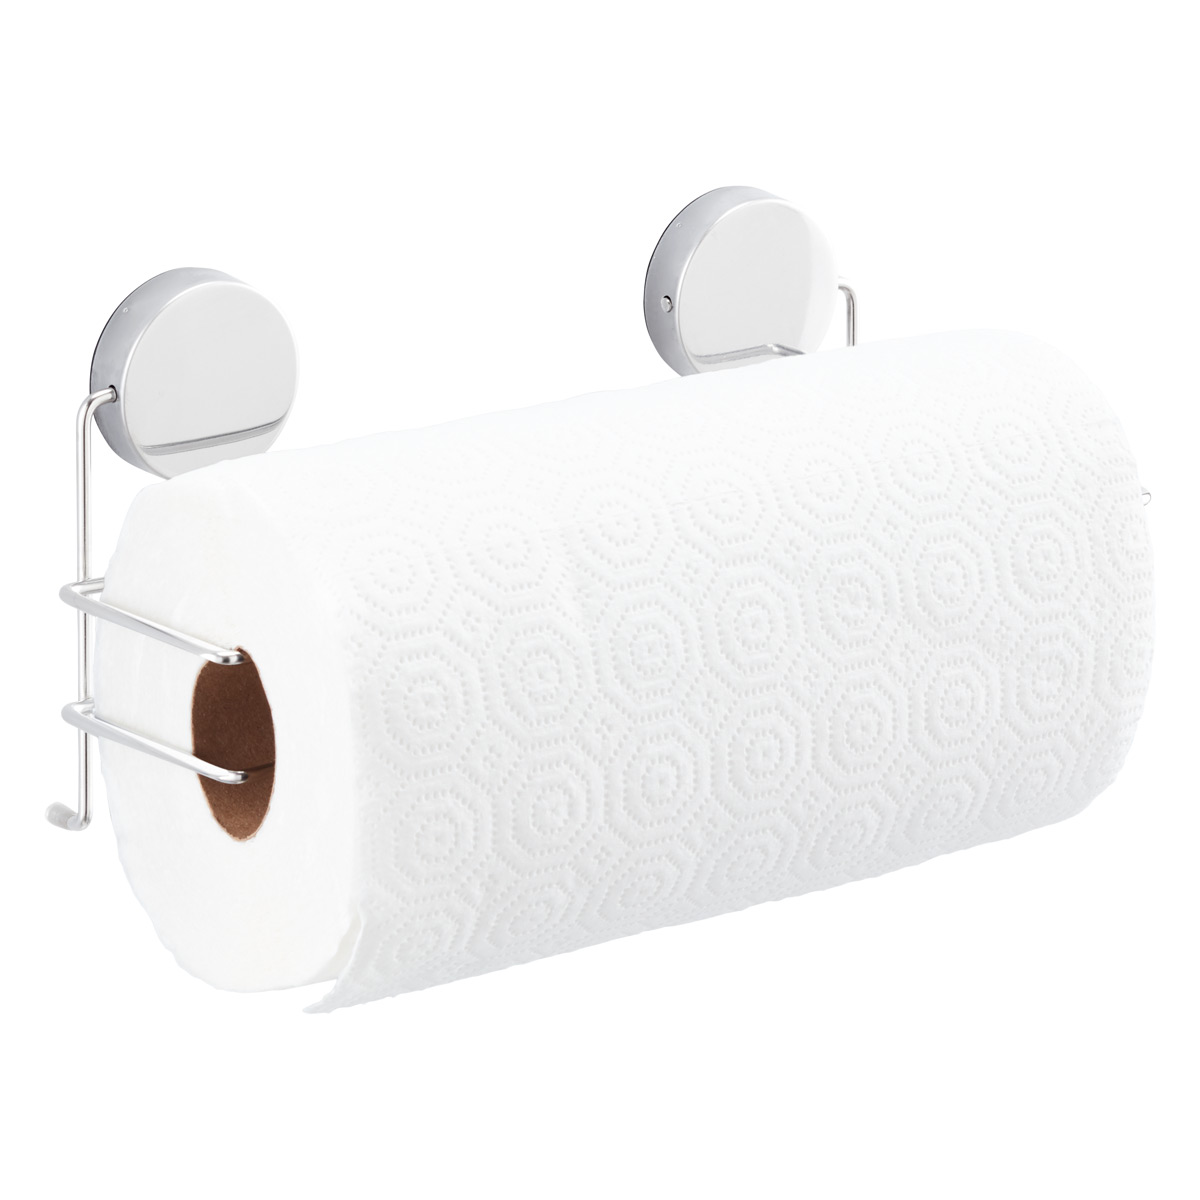 Magnetic Dish Towel Hanger Magnetic Towel Bar for Refrigerator Magnetic Dish Towel Rack Magnetic Towel Rack Kitchen Towel Holder 